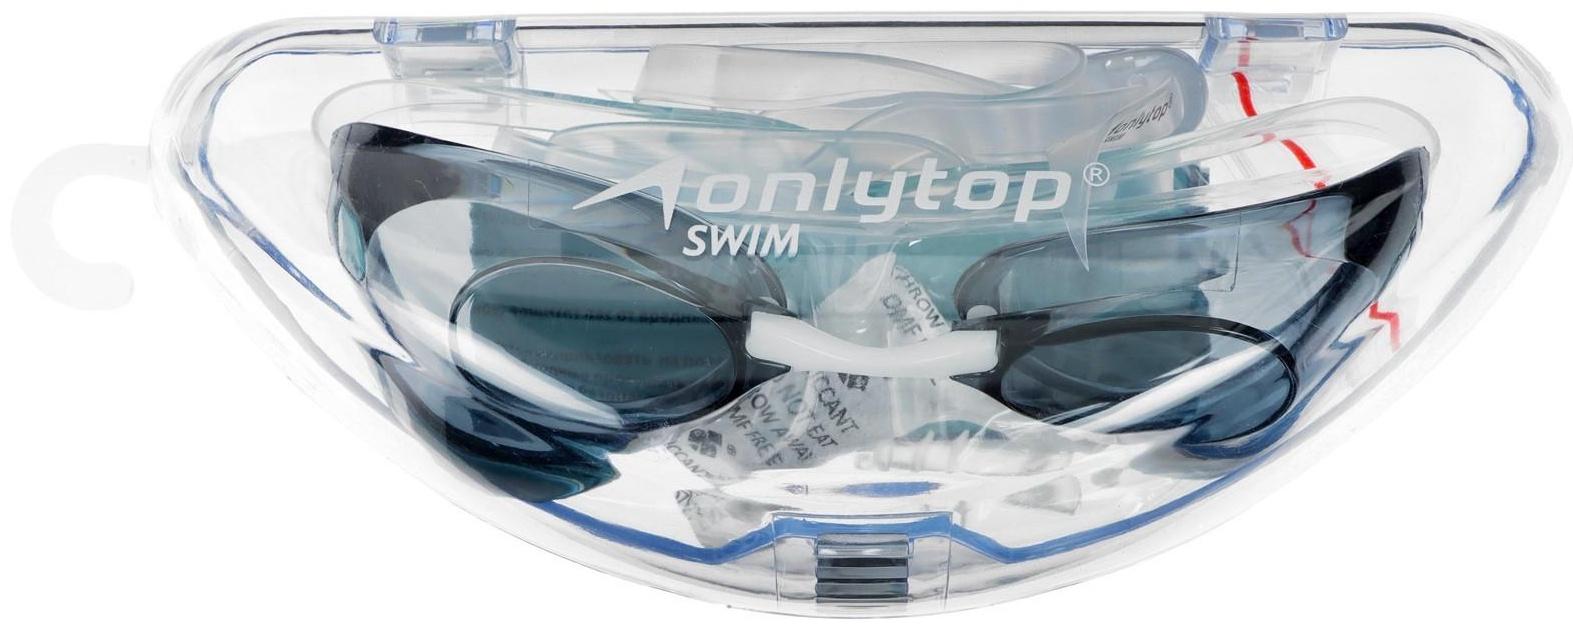 Стартовые очки для плавания + беруши и набор носовых перемычек